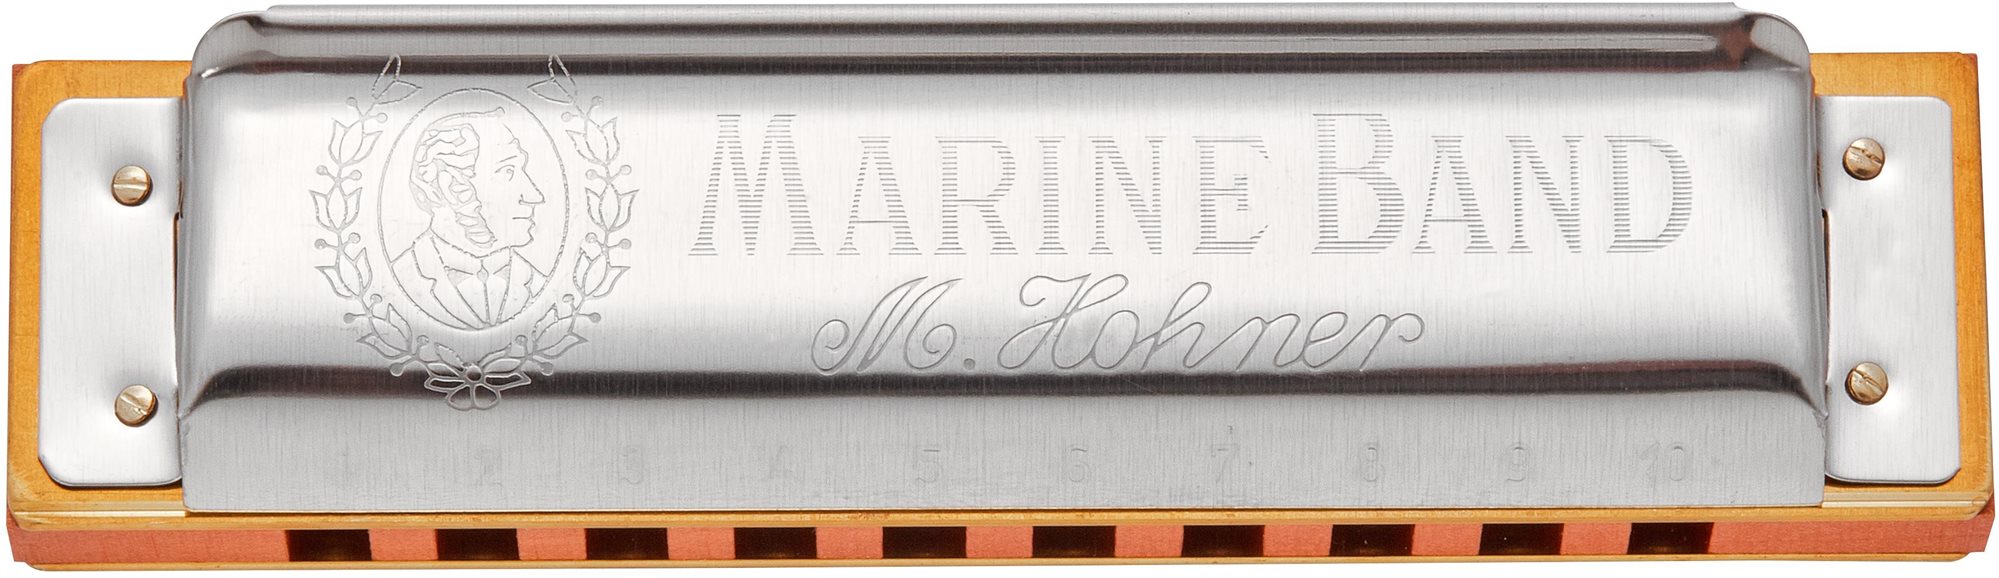 HOHNER Marine Band 1896 A-major